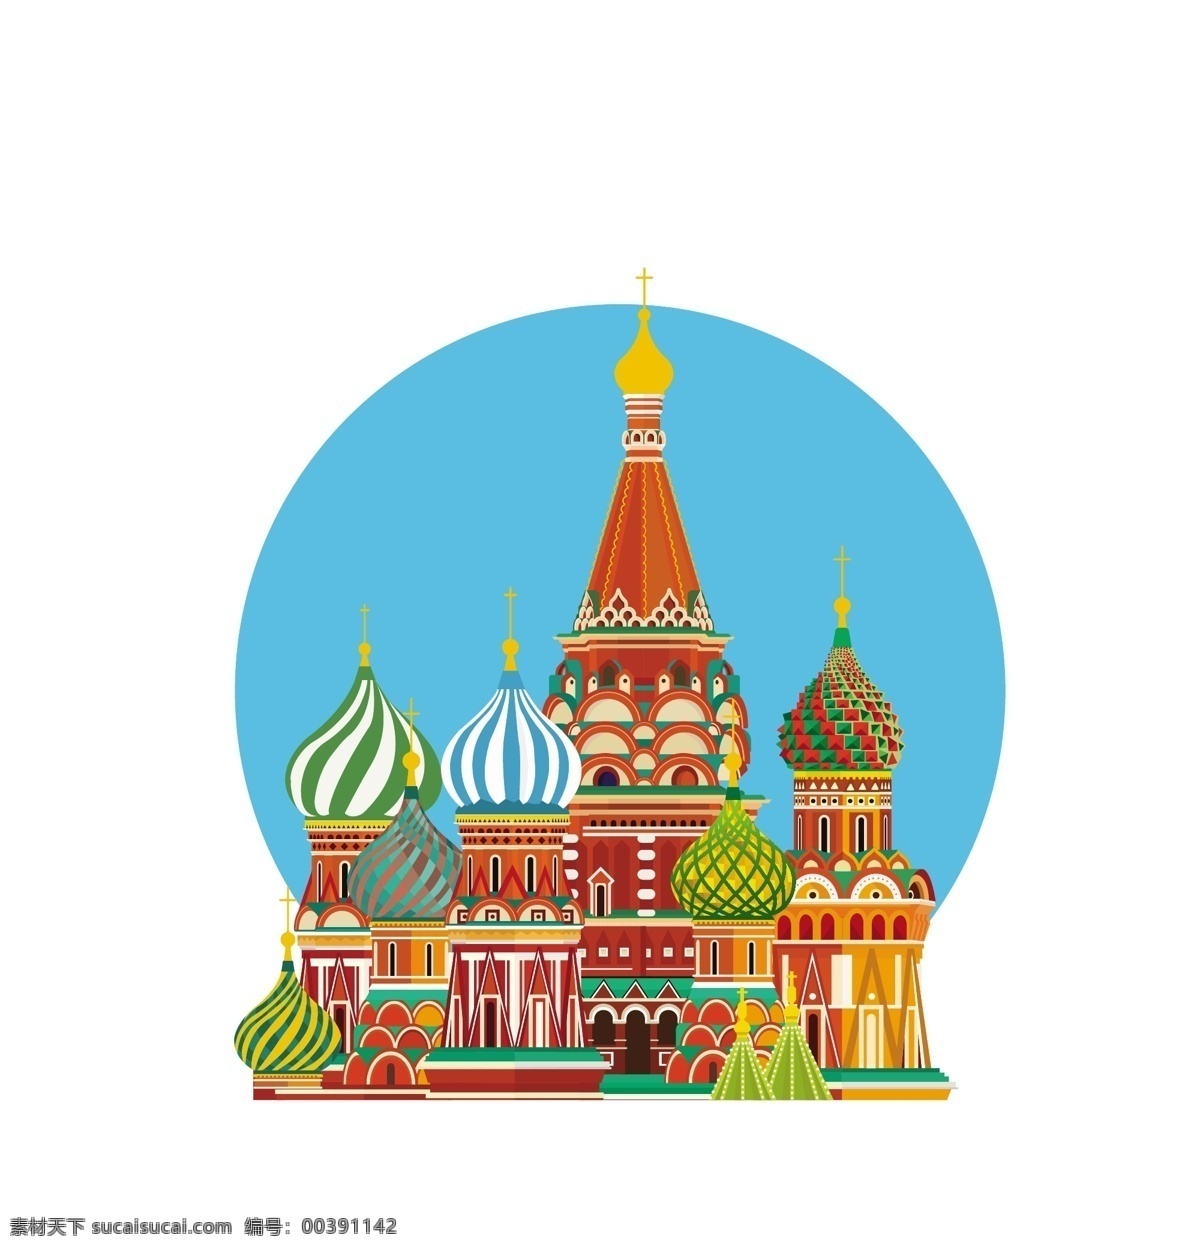 俄罗斯 东正教堂 面包顶教堂 宫殿 皇宫 城堡 卡通城市 卡通宫殿 俄国风光 旅游素材 设计素材 背景图片 自然景观 人文景观